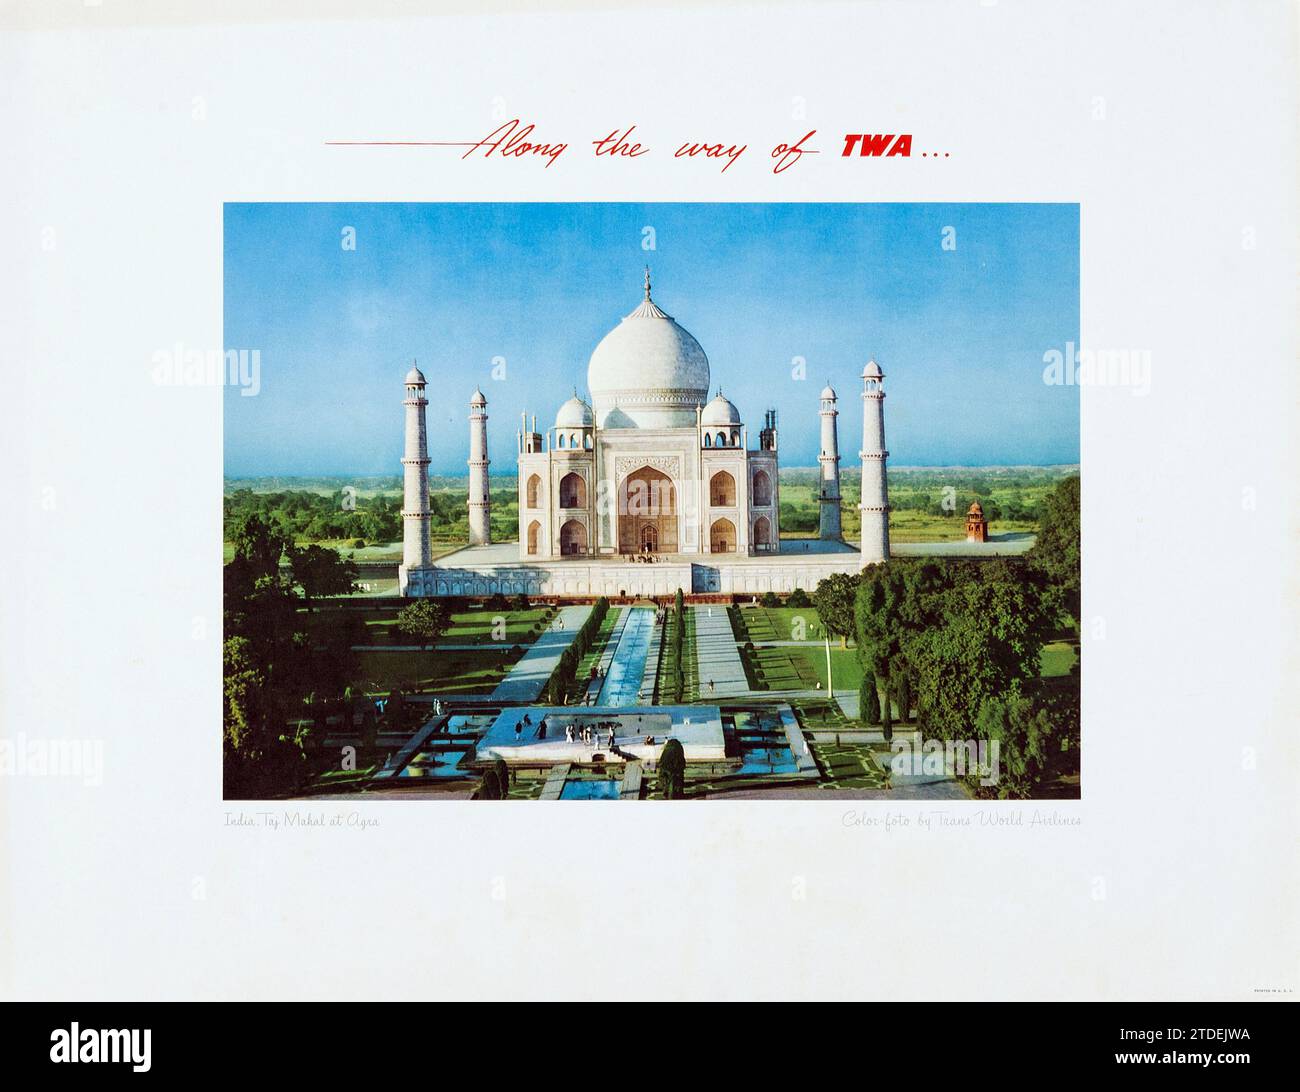 Affiche de voyage TWA pour l'Inde - le long du chemin de TWA feat. Taj Mahal à Agra - années 1960 Banque D'Images